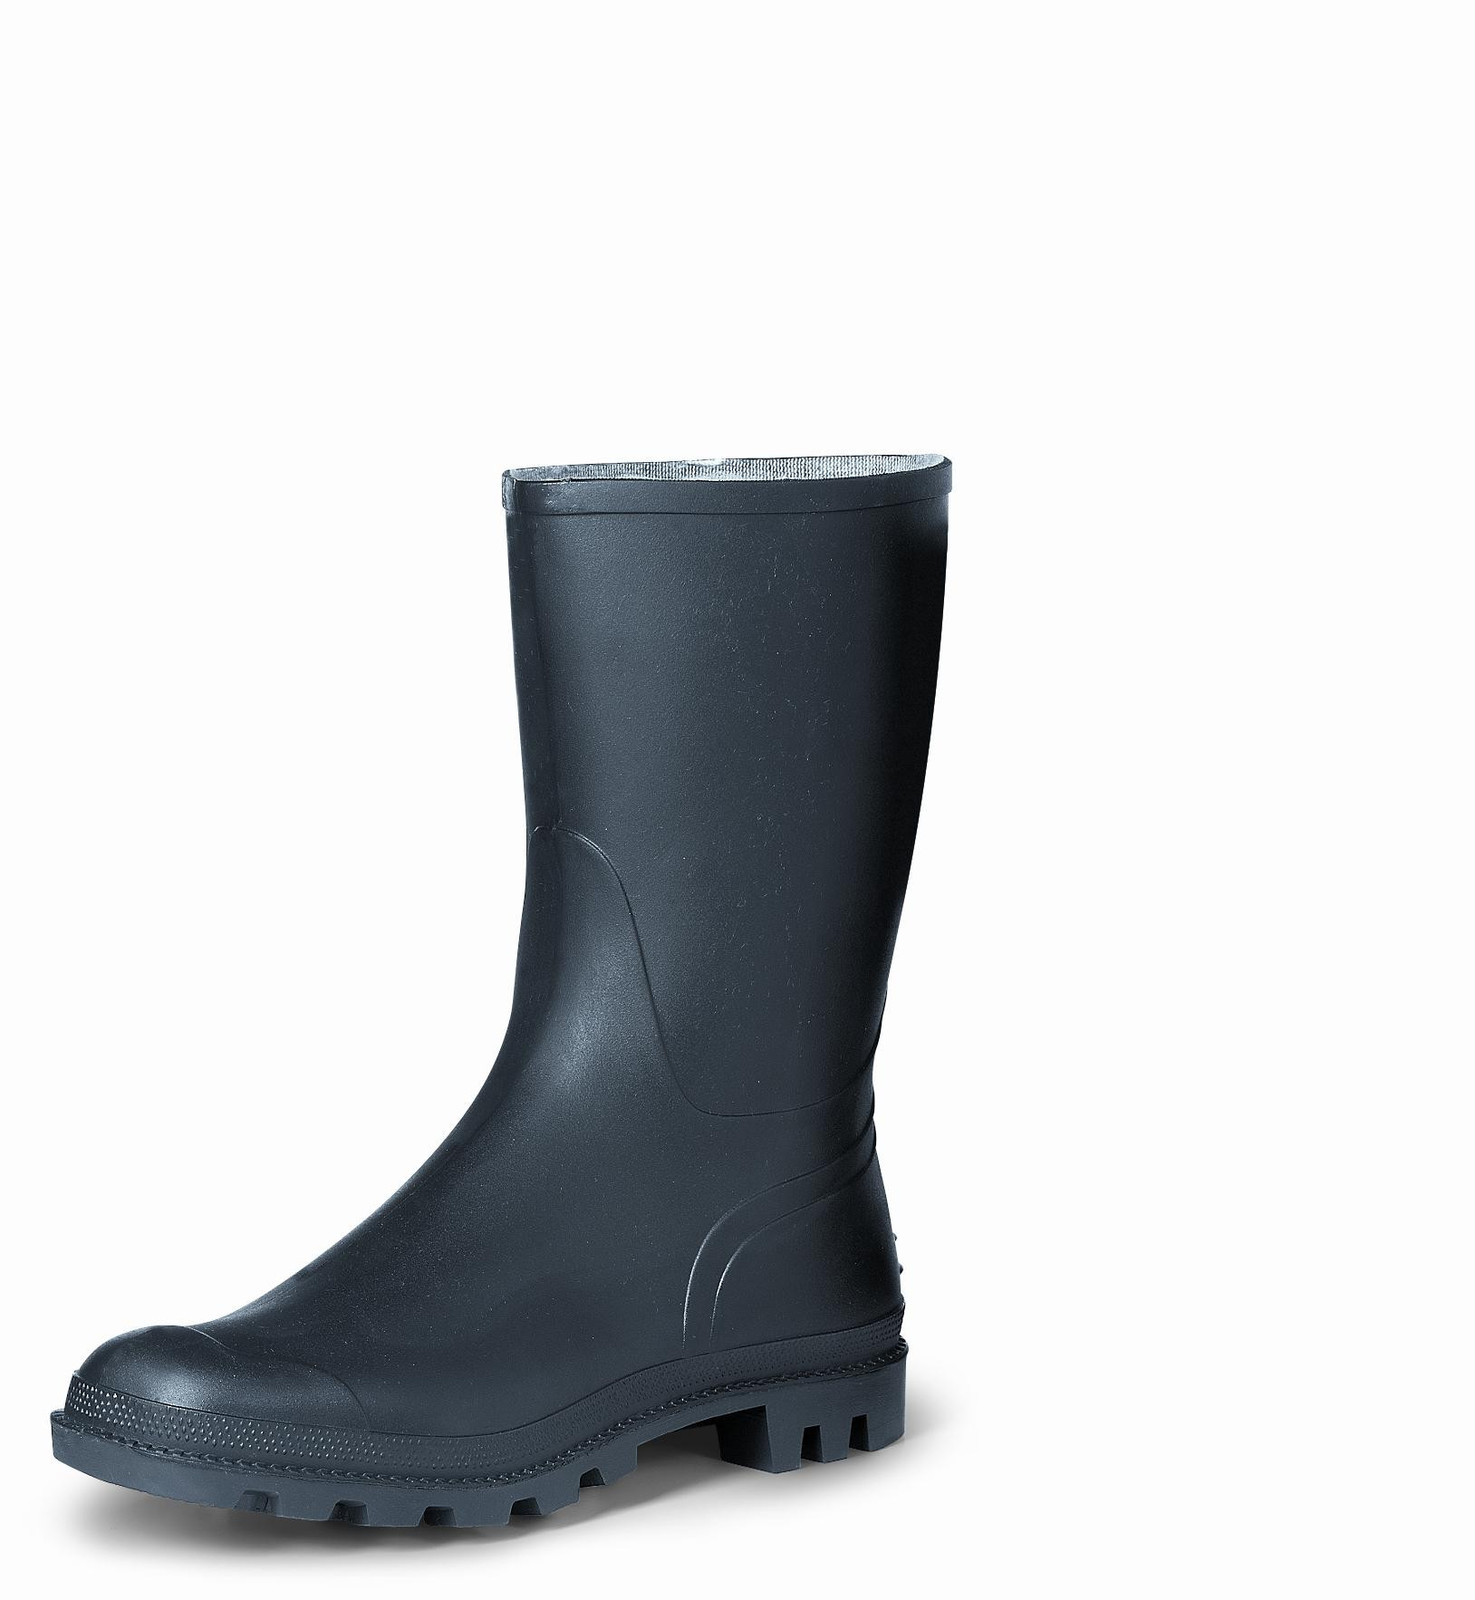 Gumáky Boots Troncheto PVC nízke - veľkosť: 40, farba: čierna